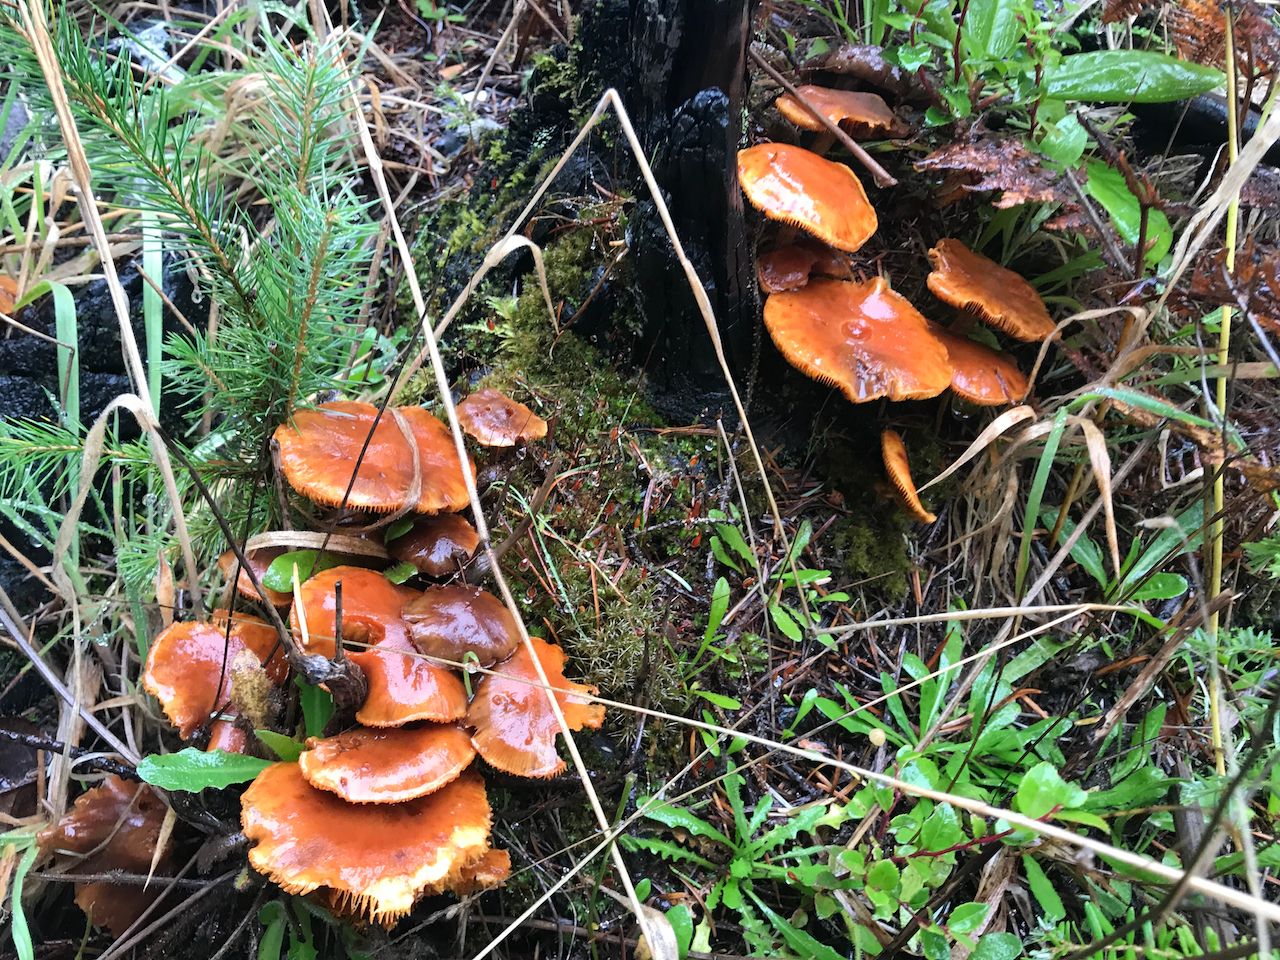 Mushrooms in Oregon